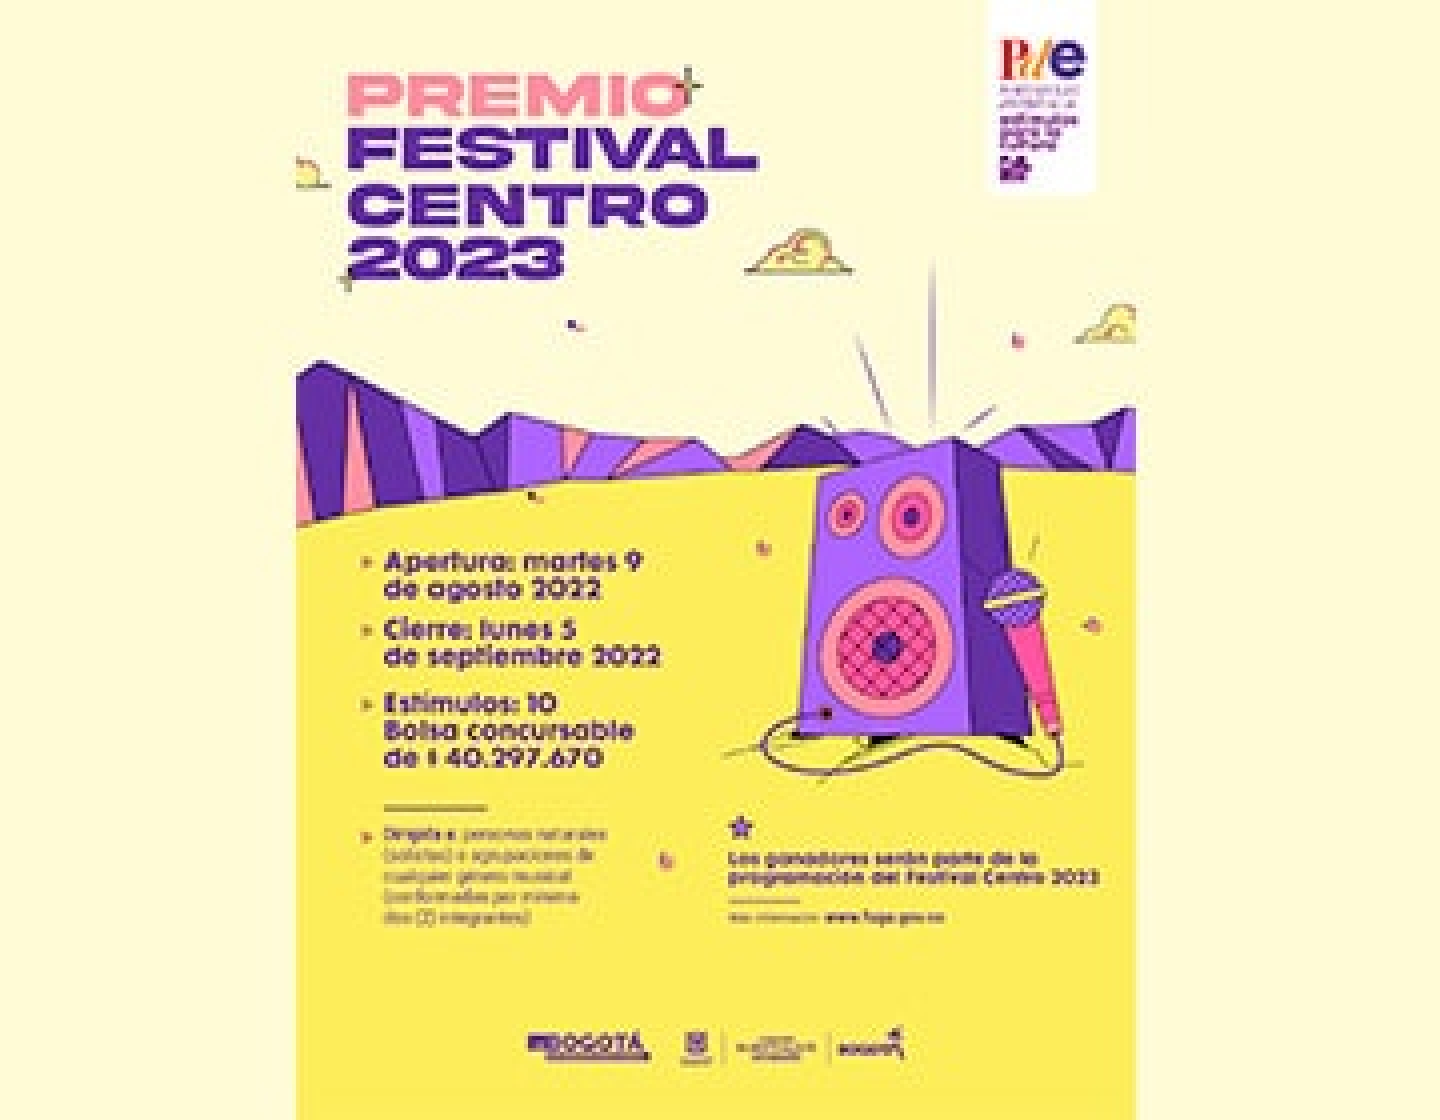 La Fuga abre la convocatoria Festival Centro 2023